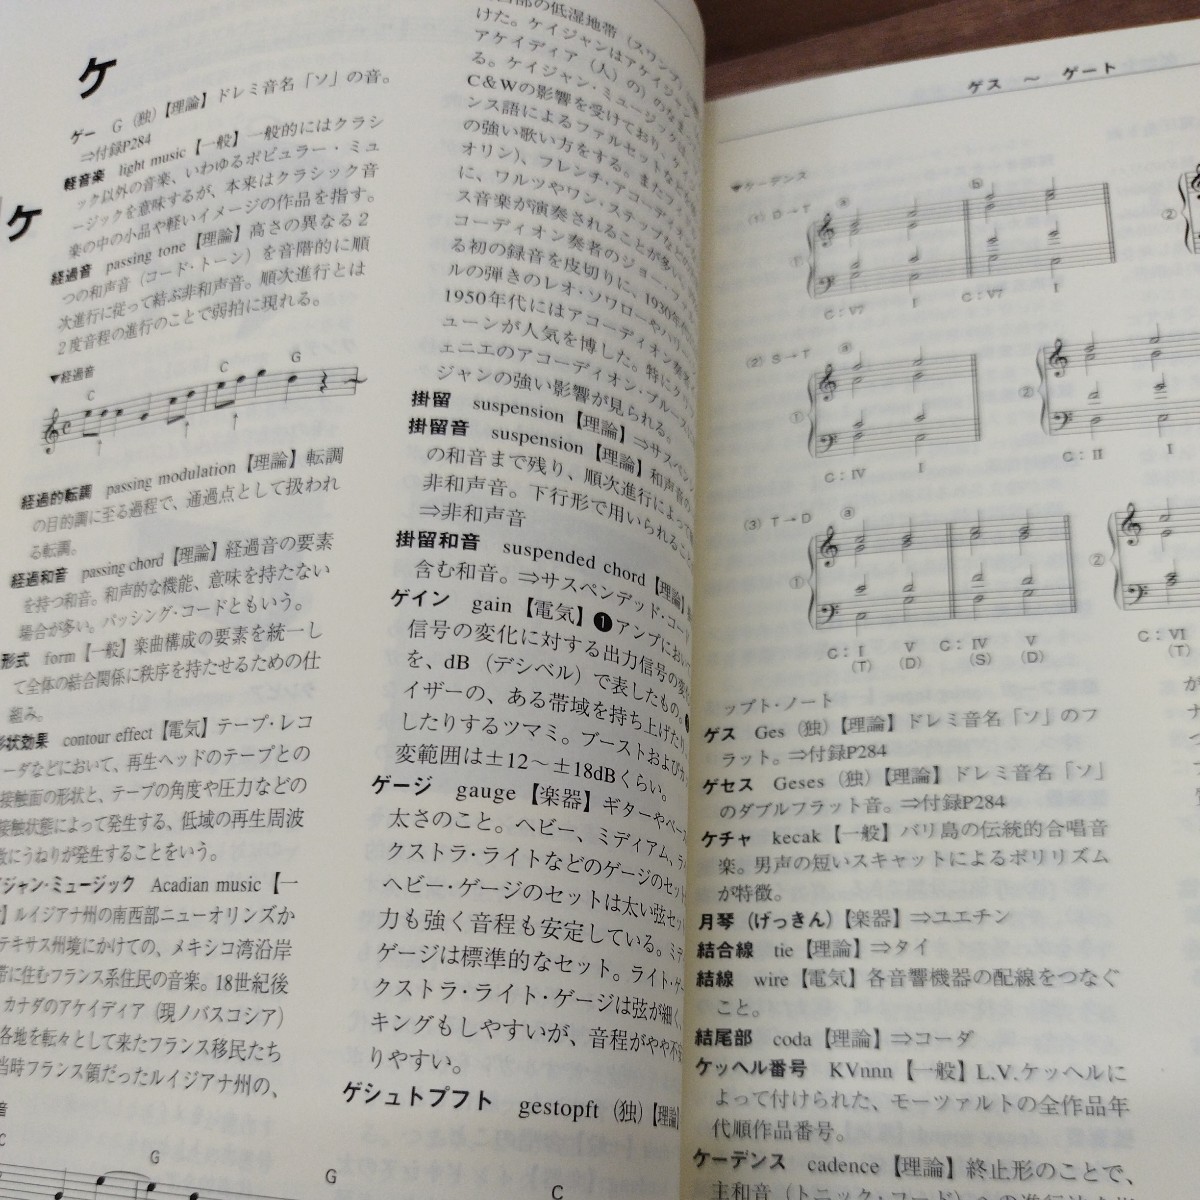  практическое использование музыка словарь 2000 год выпуск 